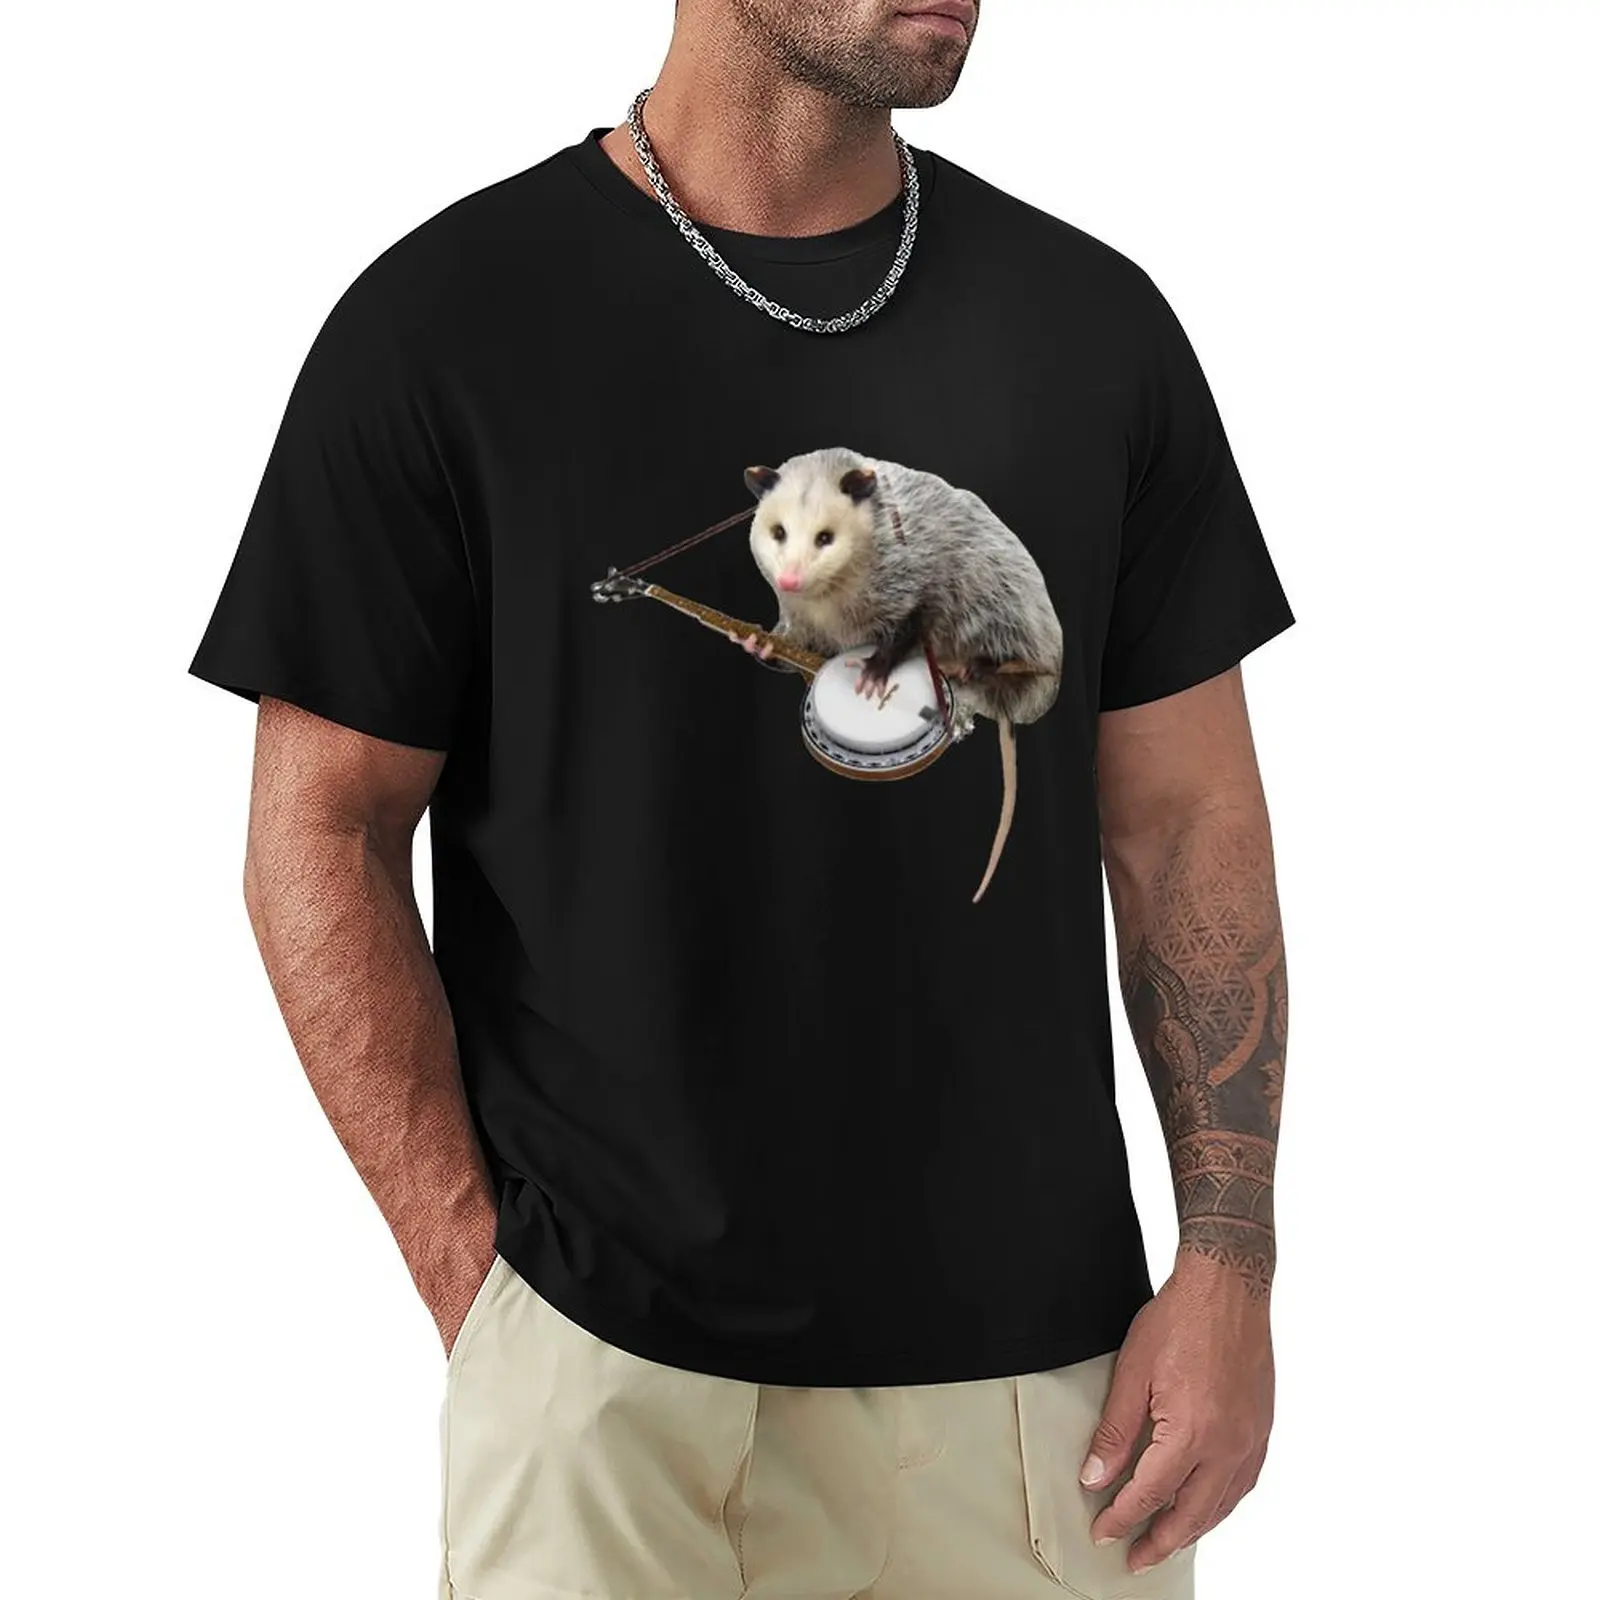 

Хлопковая черная футболка для мужчин, забавная футболка с надписью «Opossum» для игры, s swea t shirt s ca t shirt s, Мужская футболка с графическим рисунком s